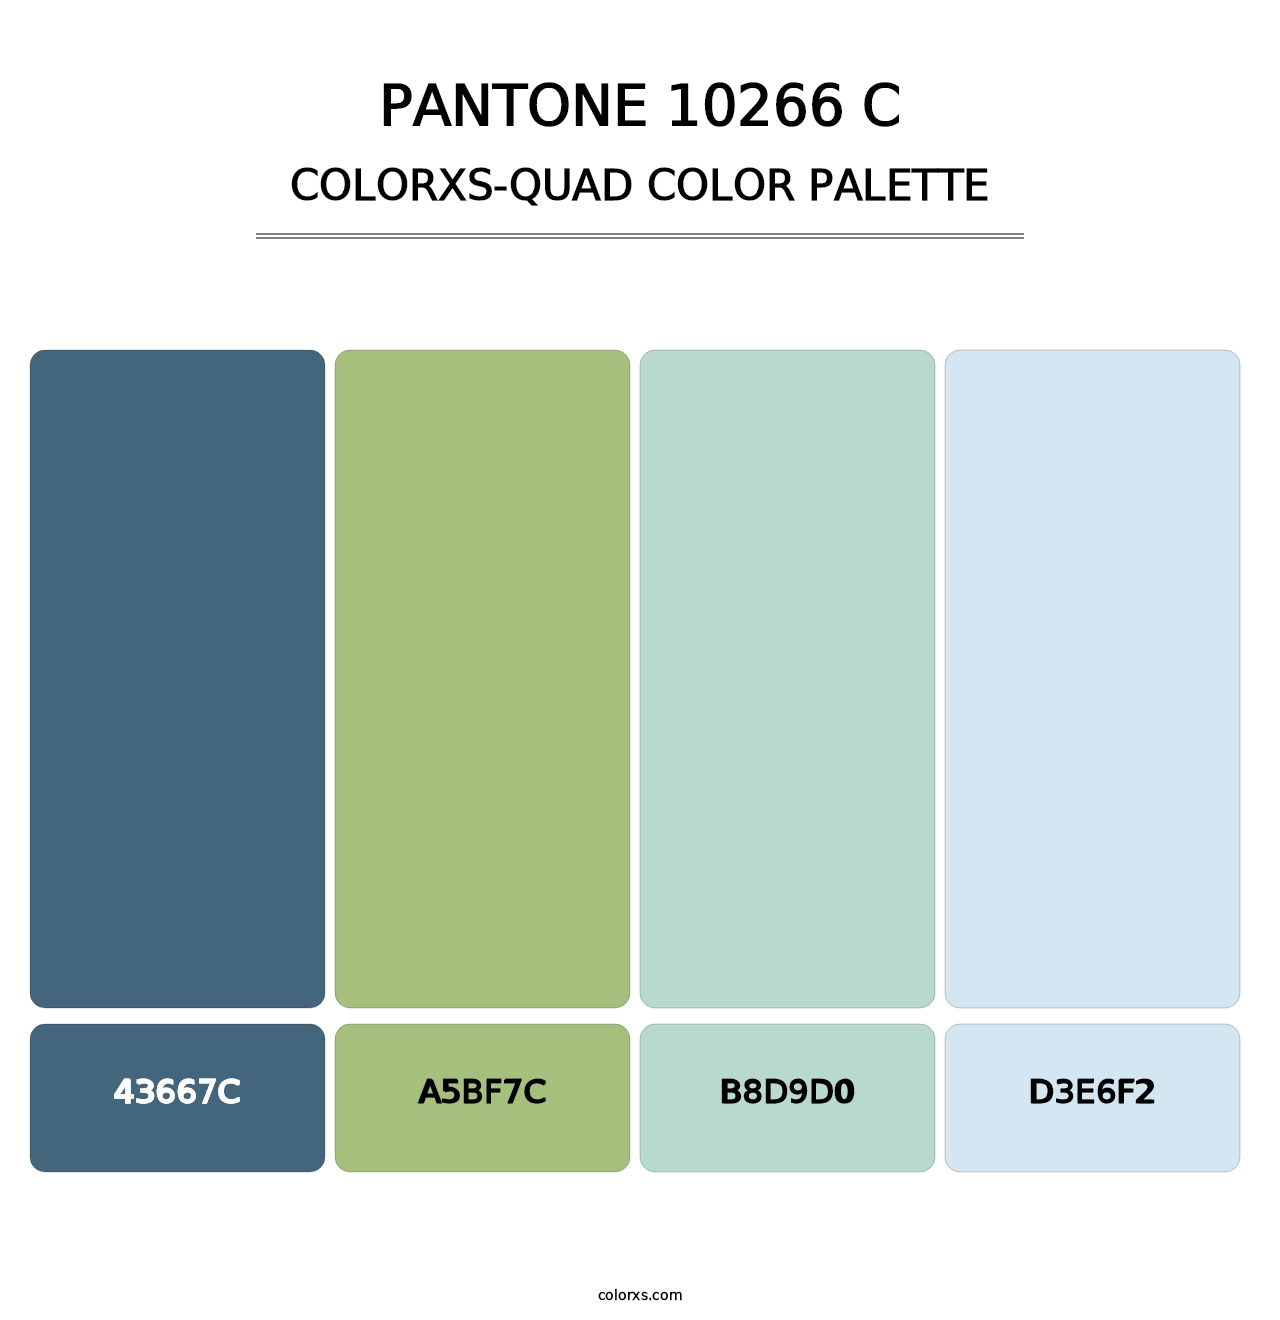 PANTONE 10266 C - Colorxs Quad Palette